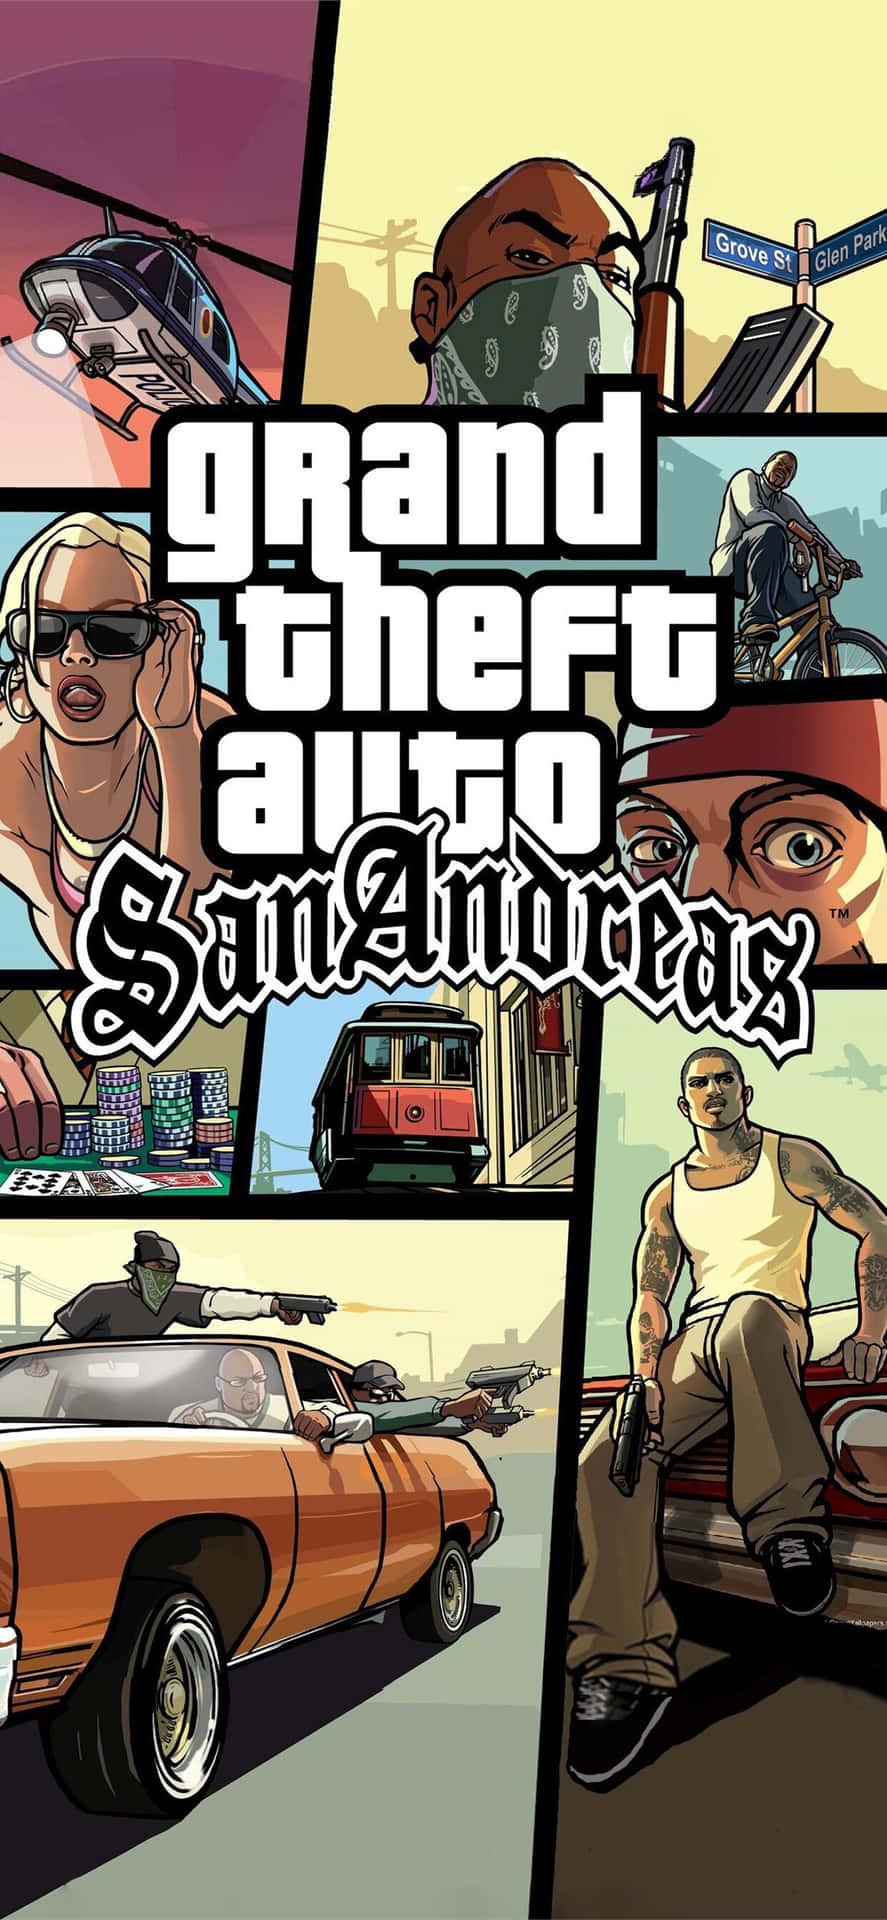 Iphonexs Max Bakgrundsbild Med Grand Theft Auto V Och San Andreas-poster.